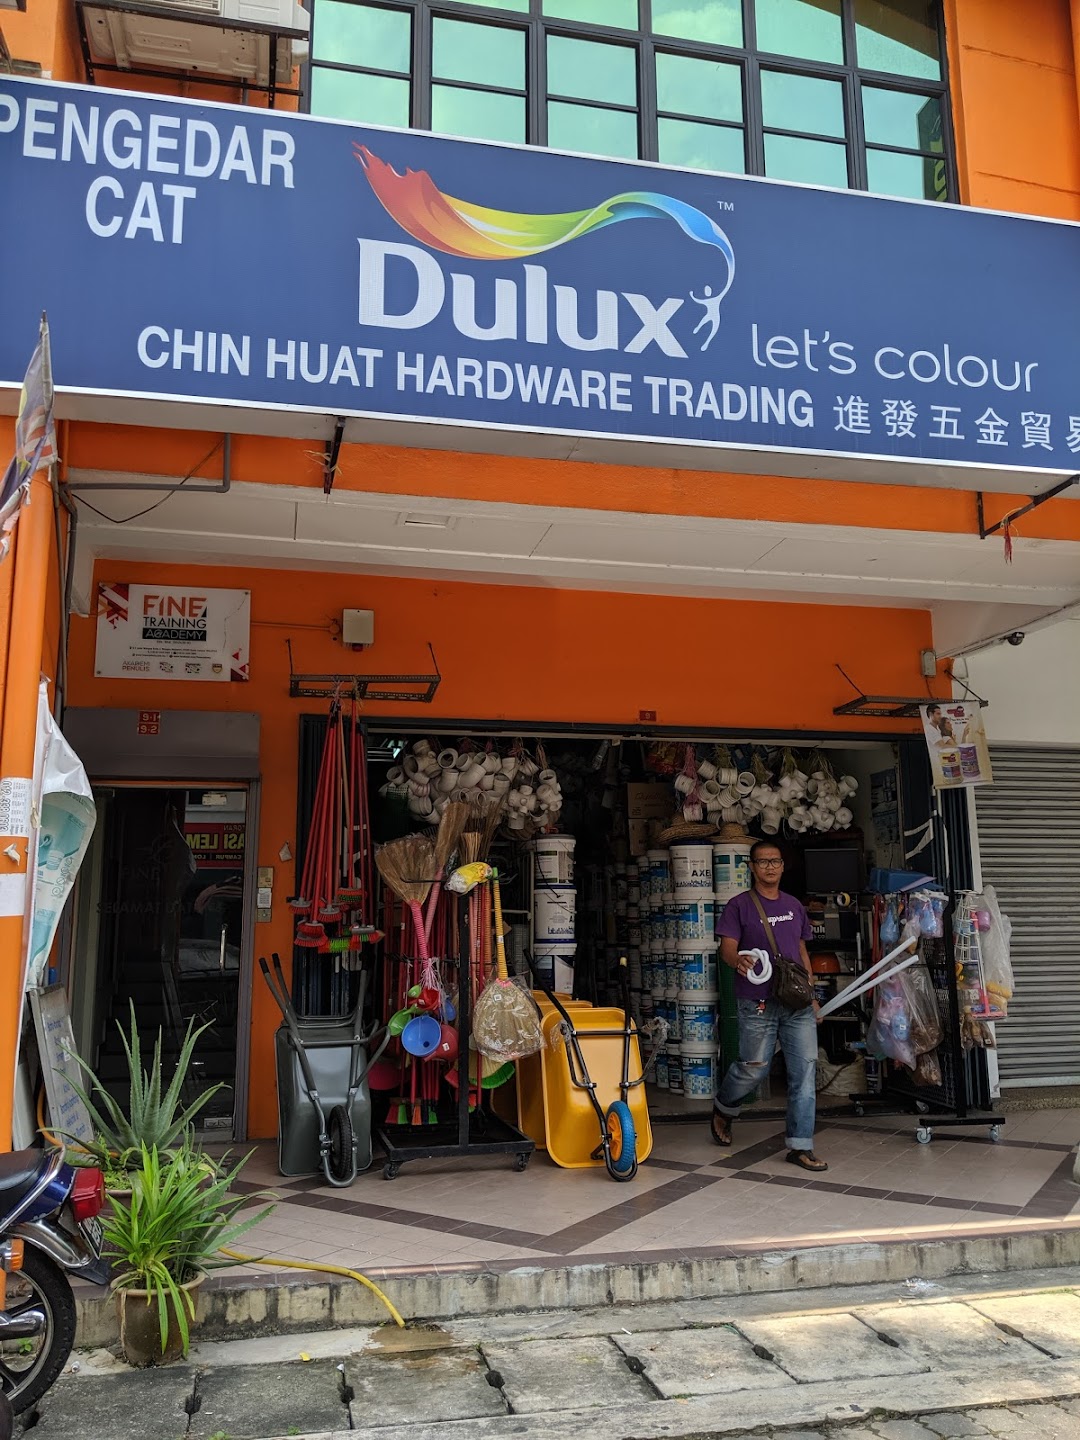 Chin Huat Hardware Trading